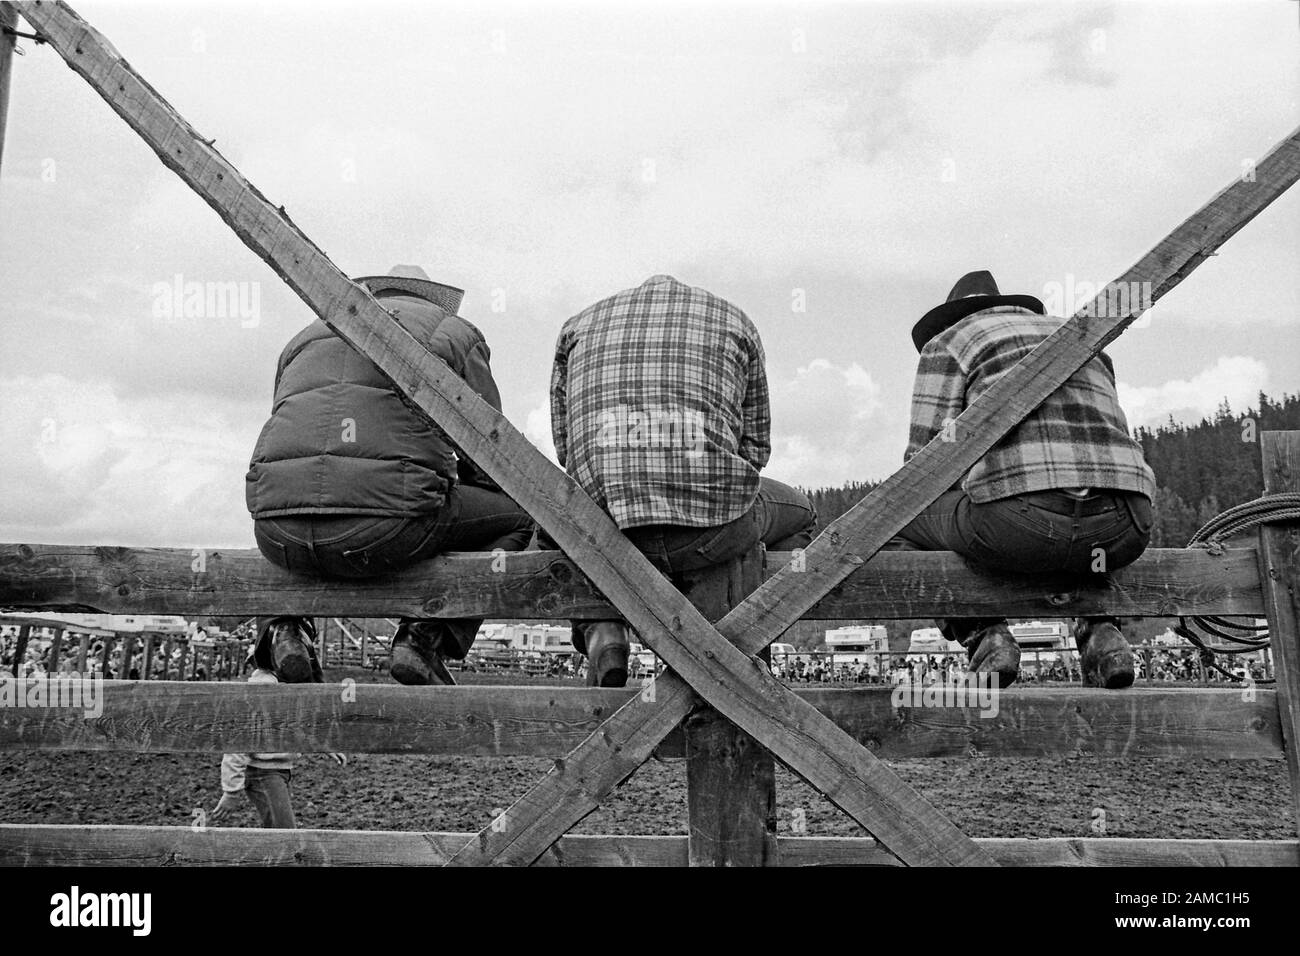 Trois spectateurs de rodéo assis sur une clôture en bois dans les régions rurales du Canada photo monochrome vers 1982. Vallée de l'eau Alberta Banque D'Images